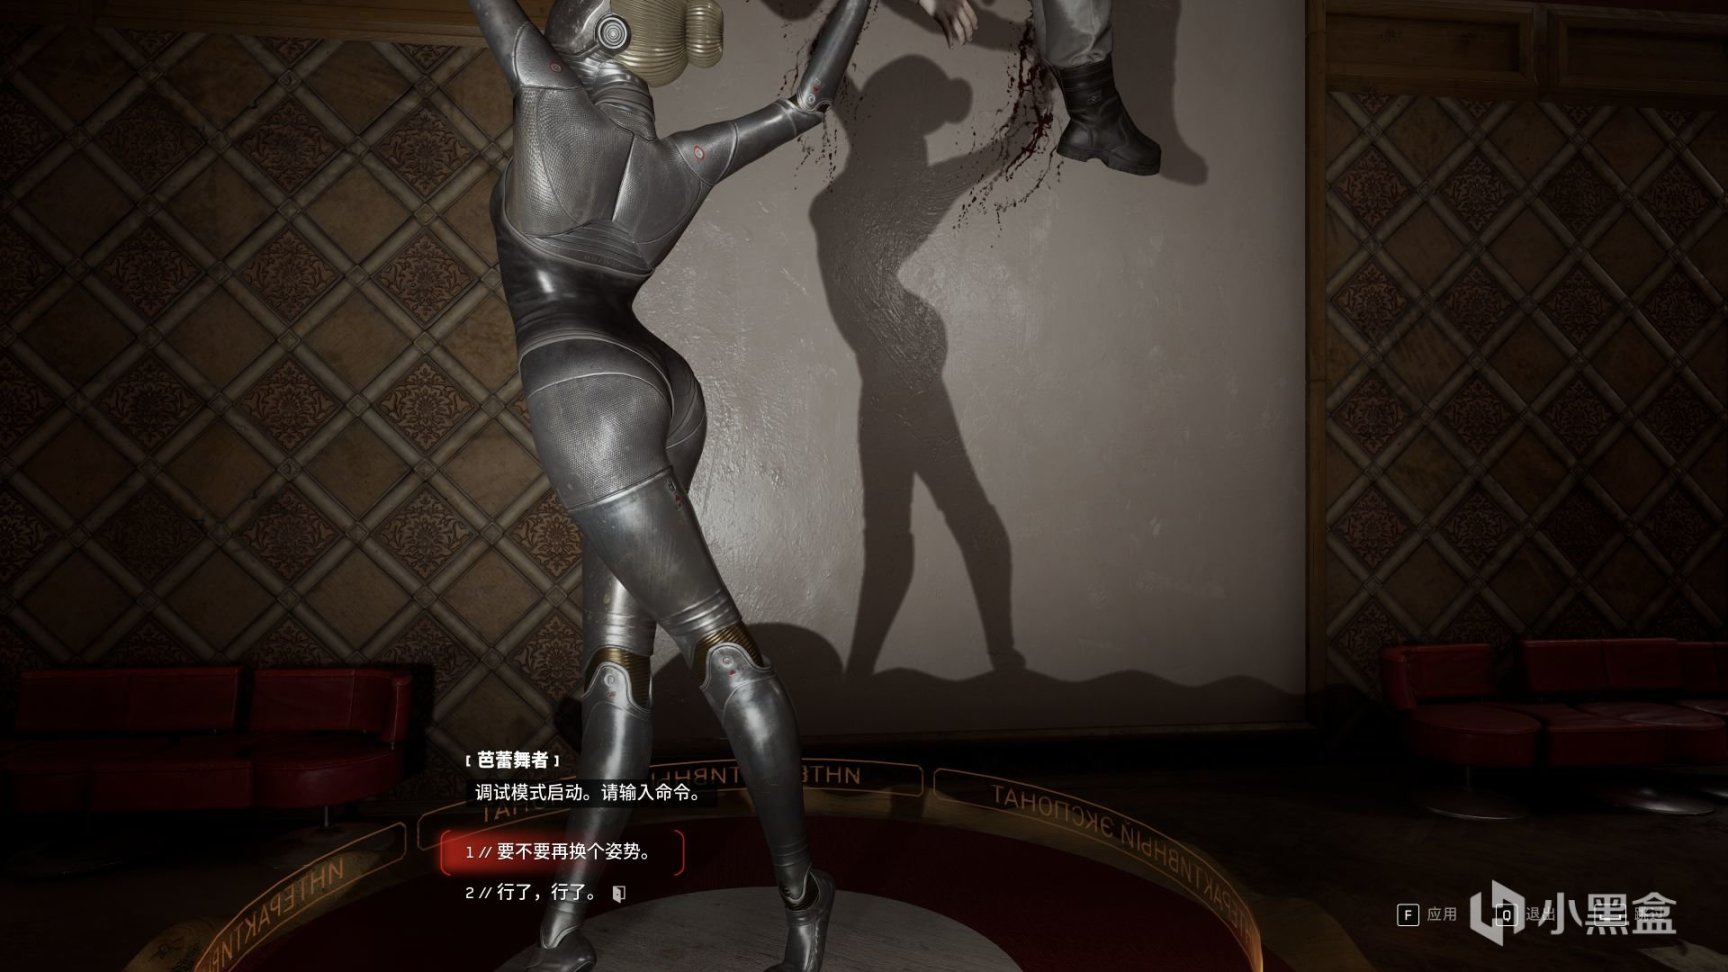 【PC游戏】诺拉小姐要生气了 欣赏《原子之心》机器芭蕾之美-第10张